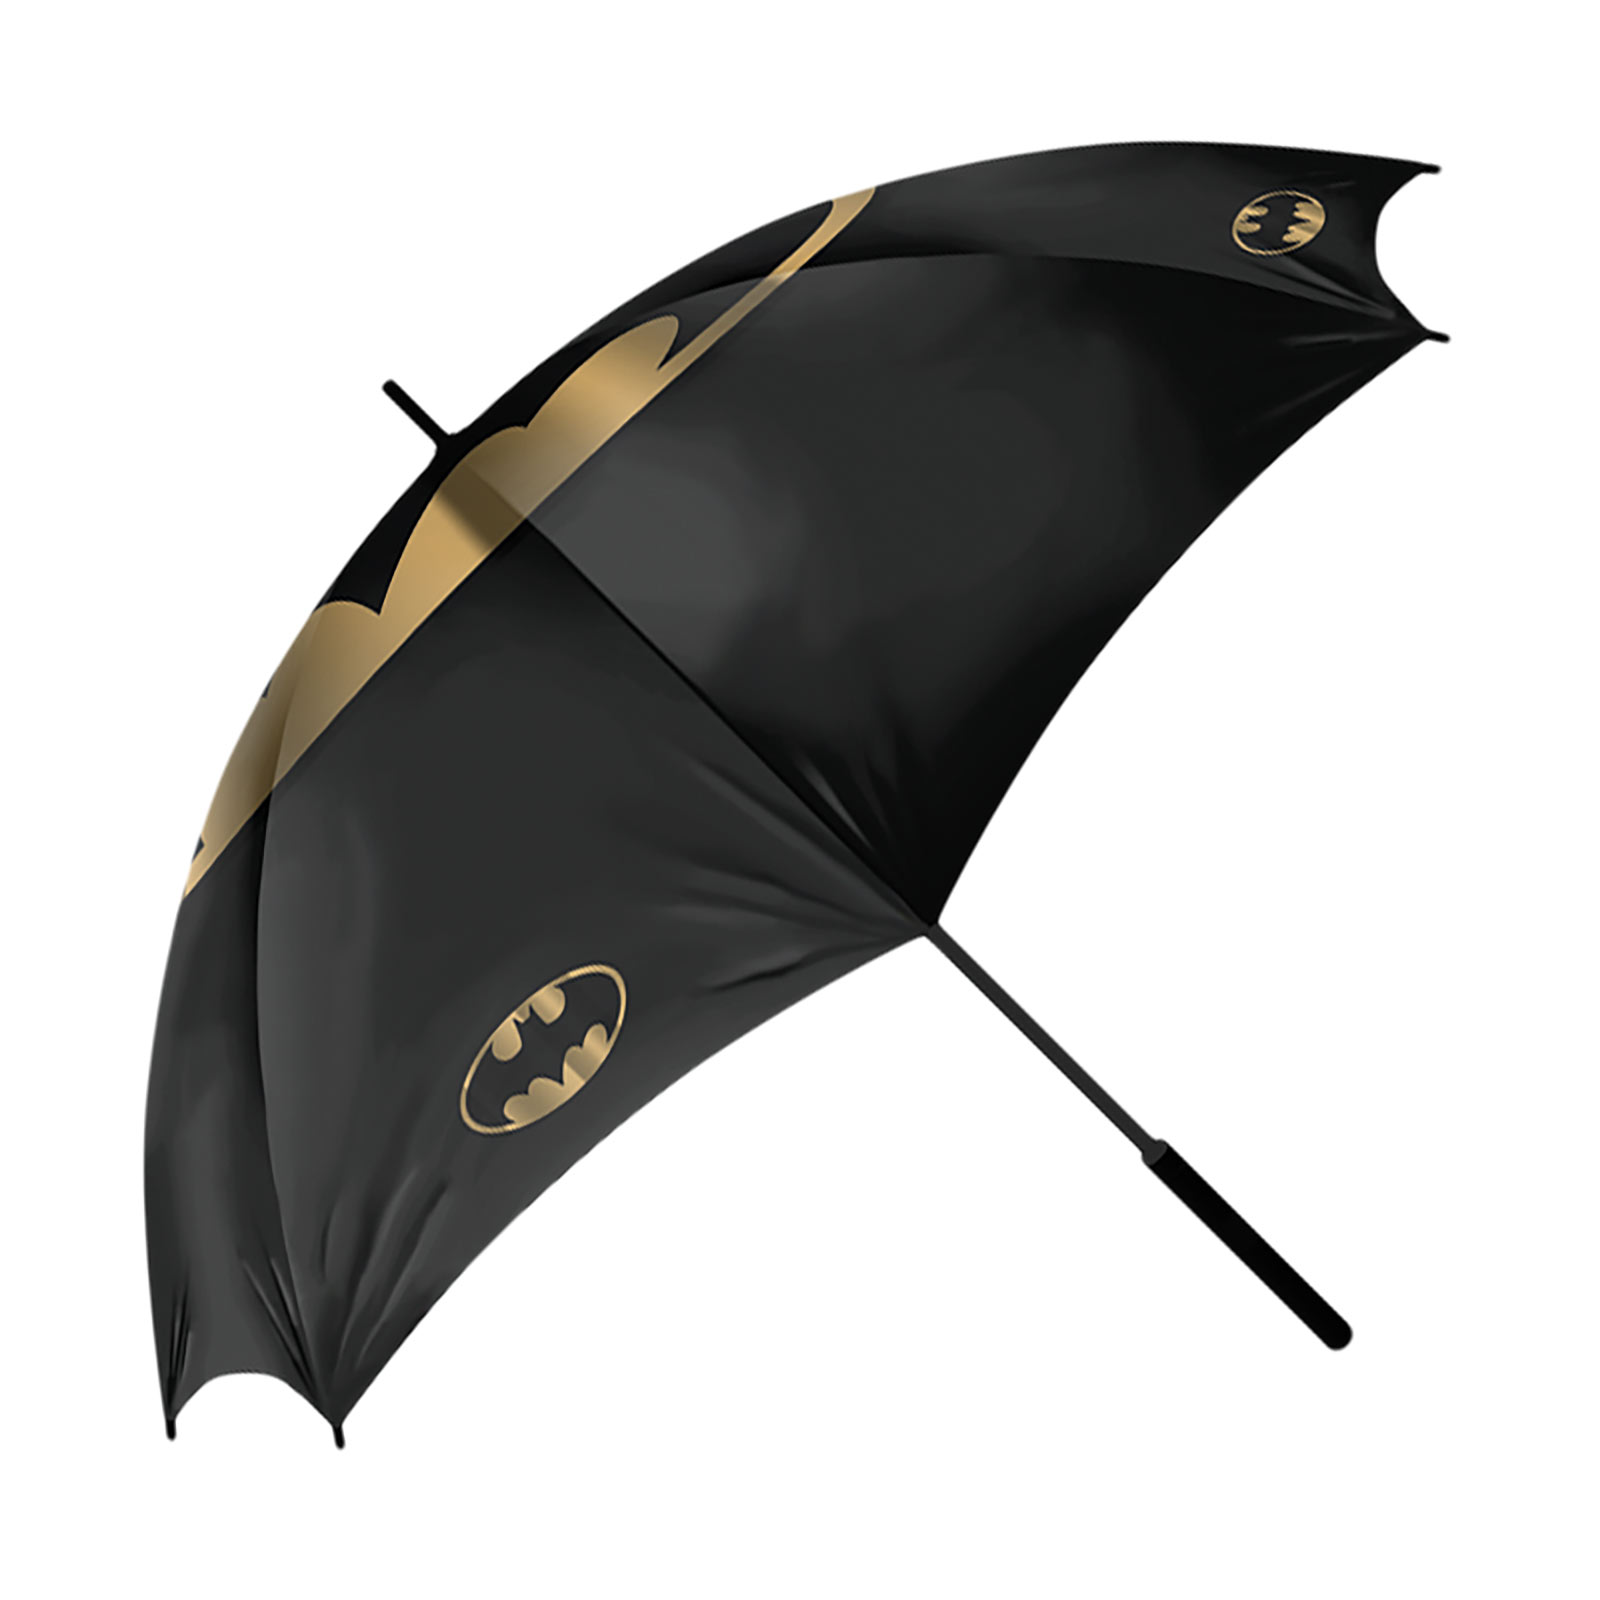 Unsere besten Produkte - Finden Sie auf dieser Seite die Batman fan shop Ihrer Träume